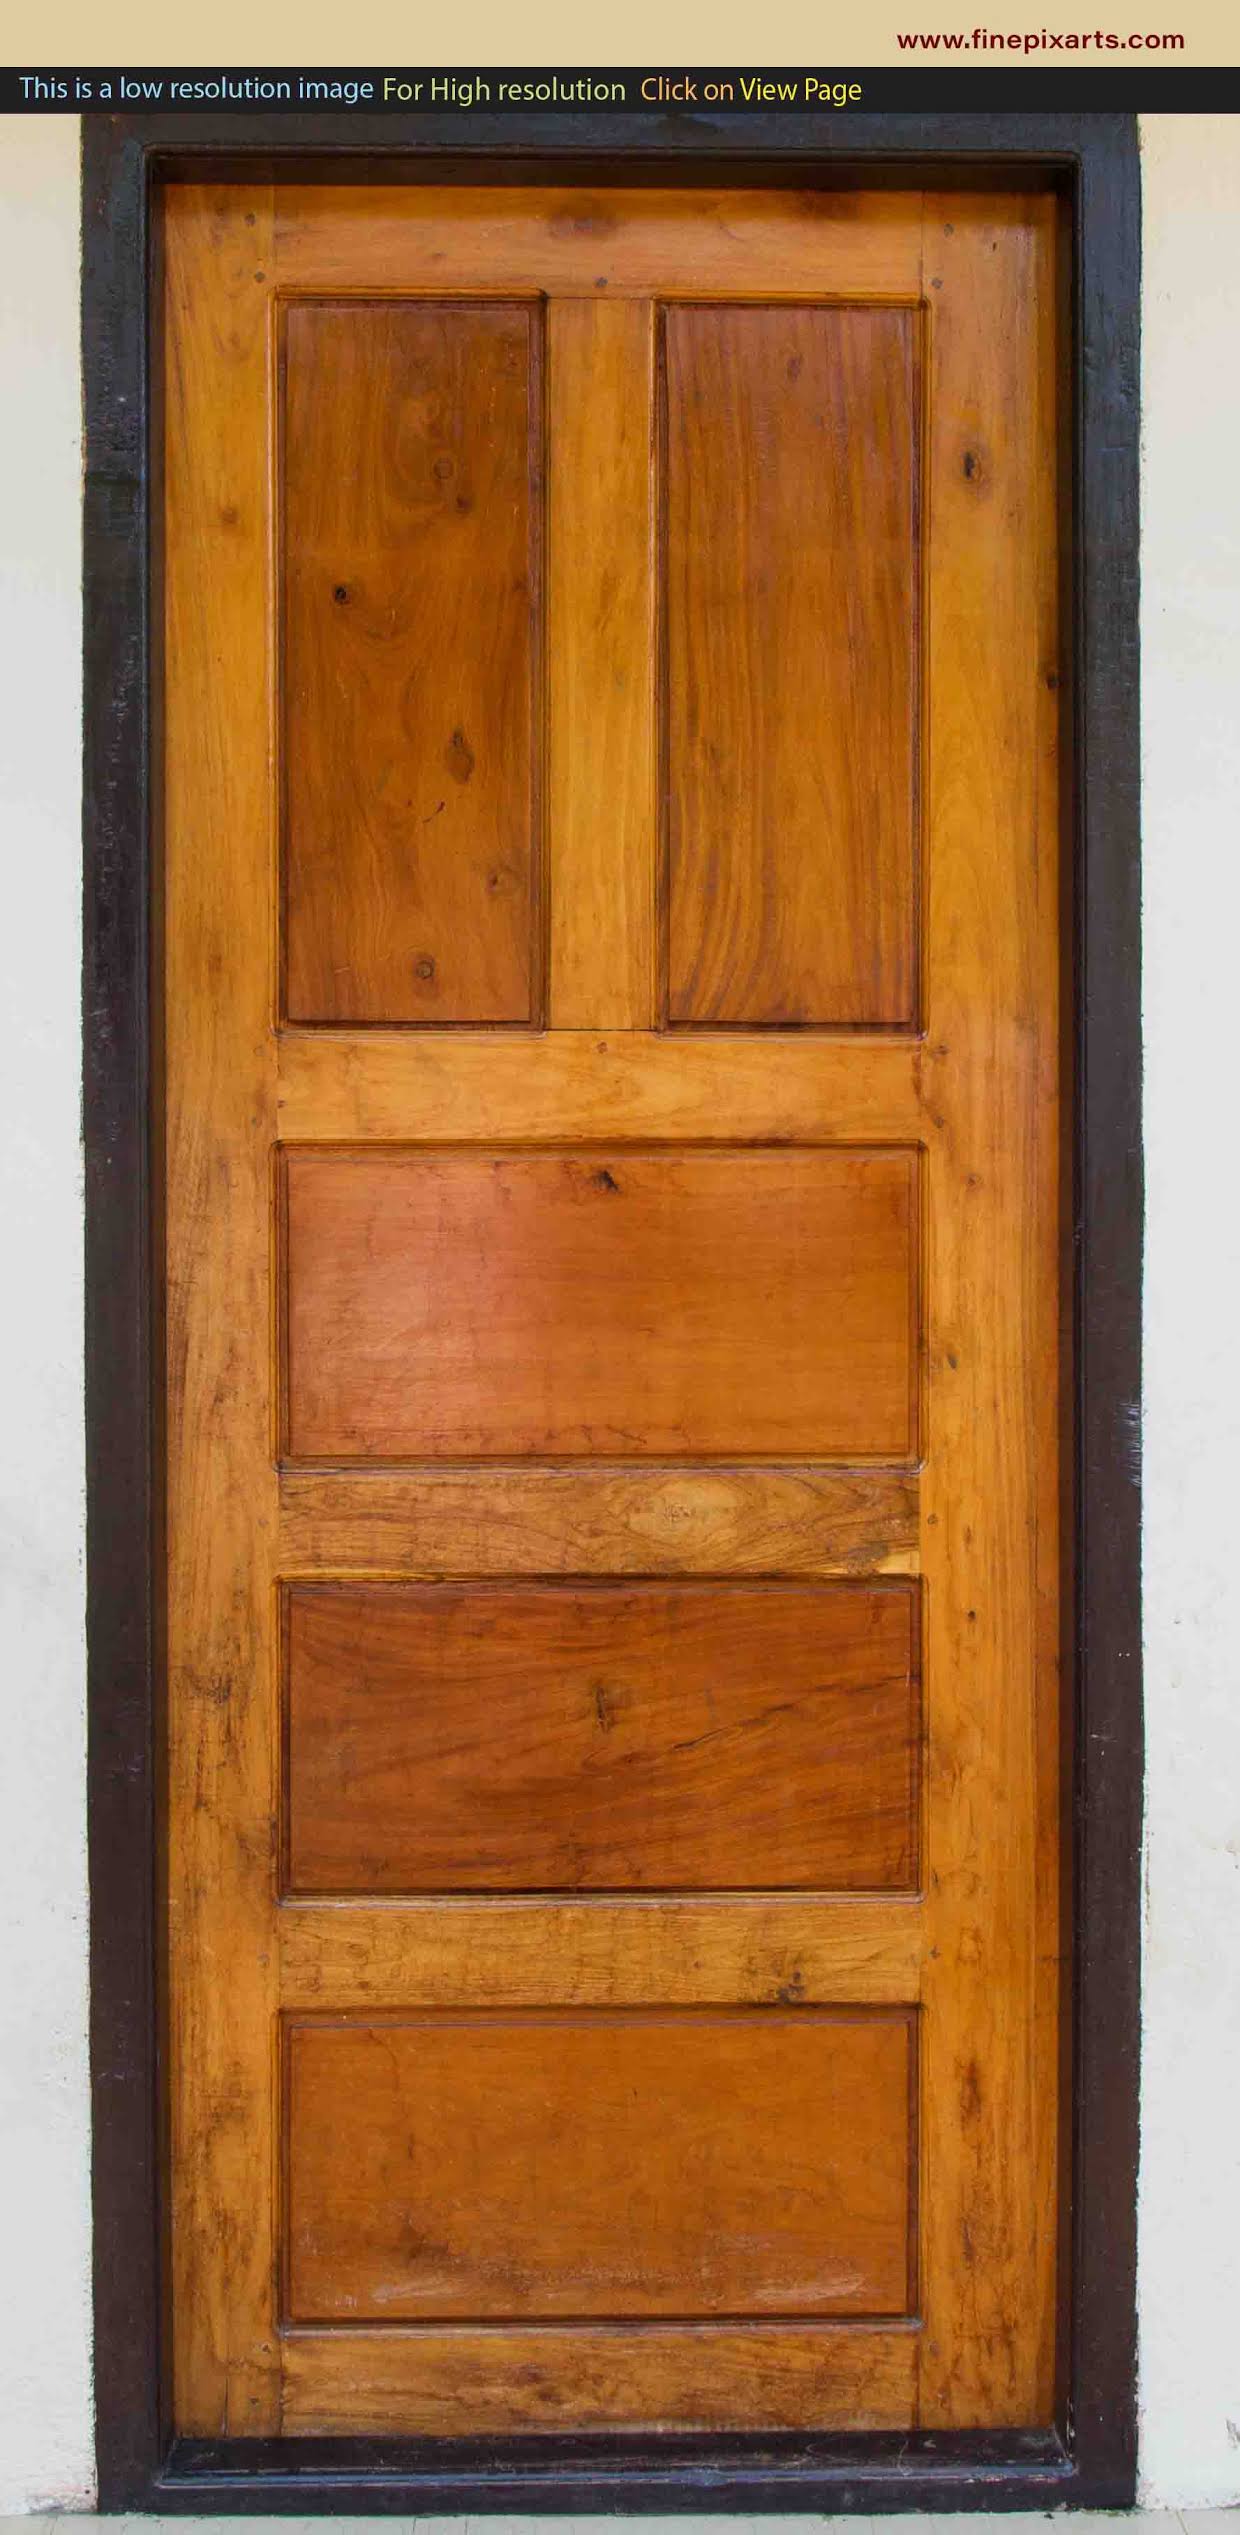 Wooden door texture 00003